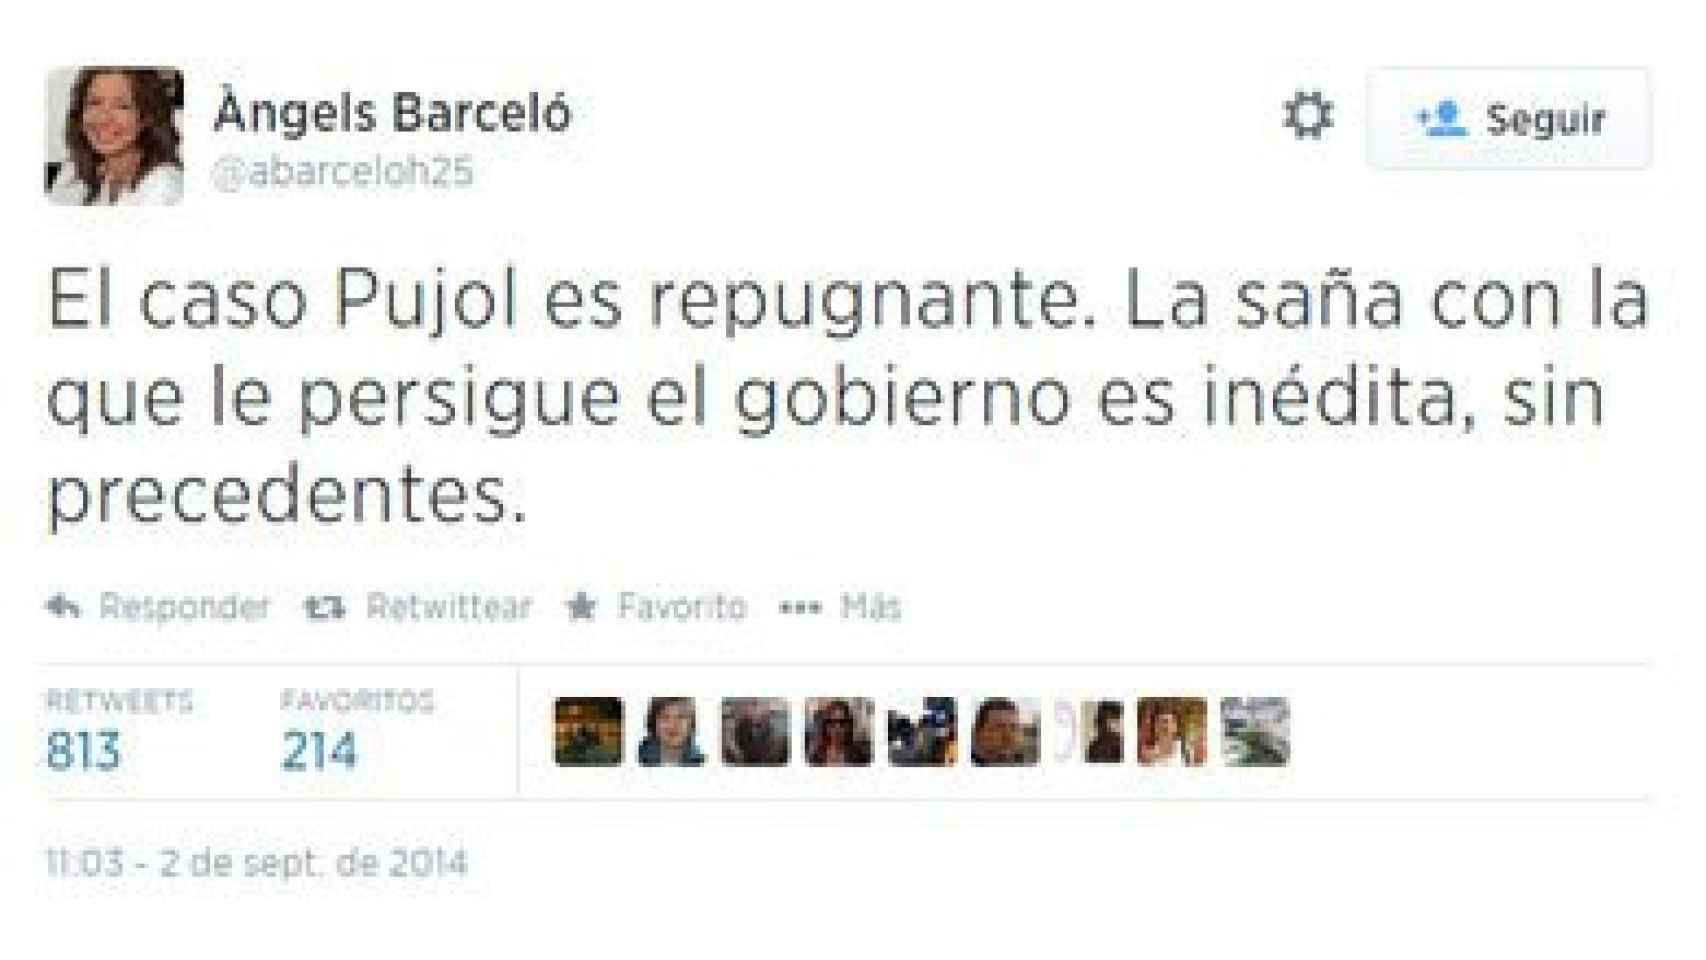 Tuit de Àngels Barceló defendiendo a Pujol y cargando contra el Gobierno